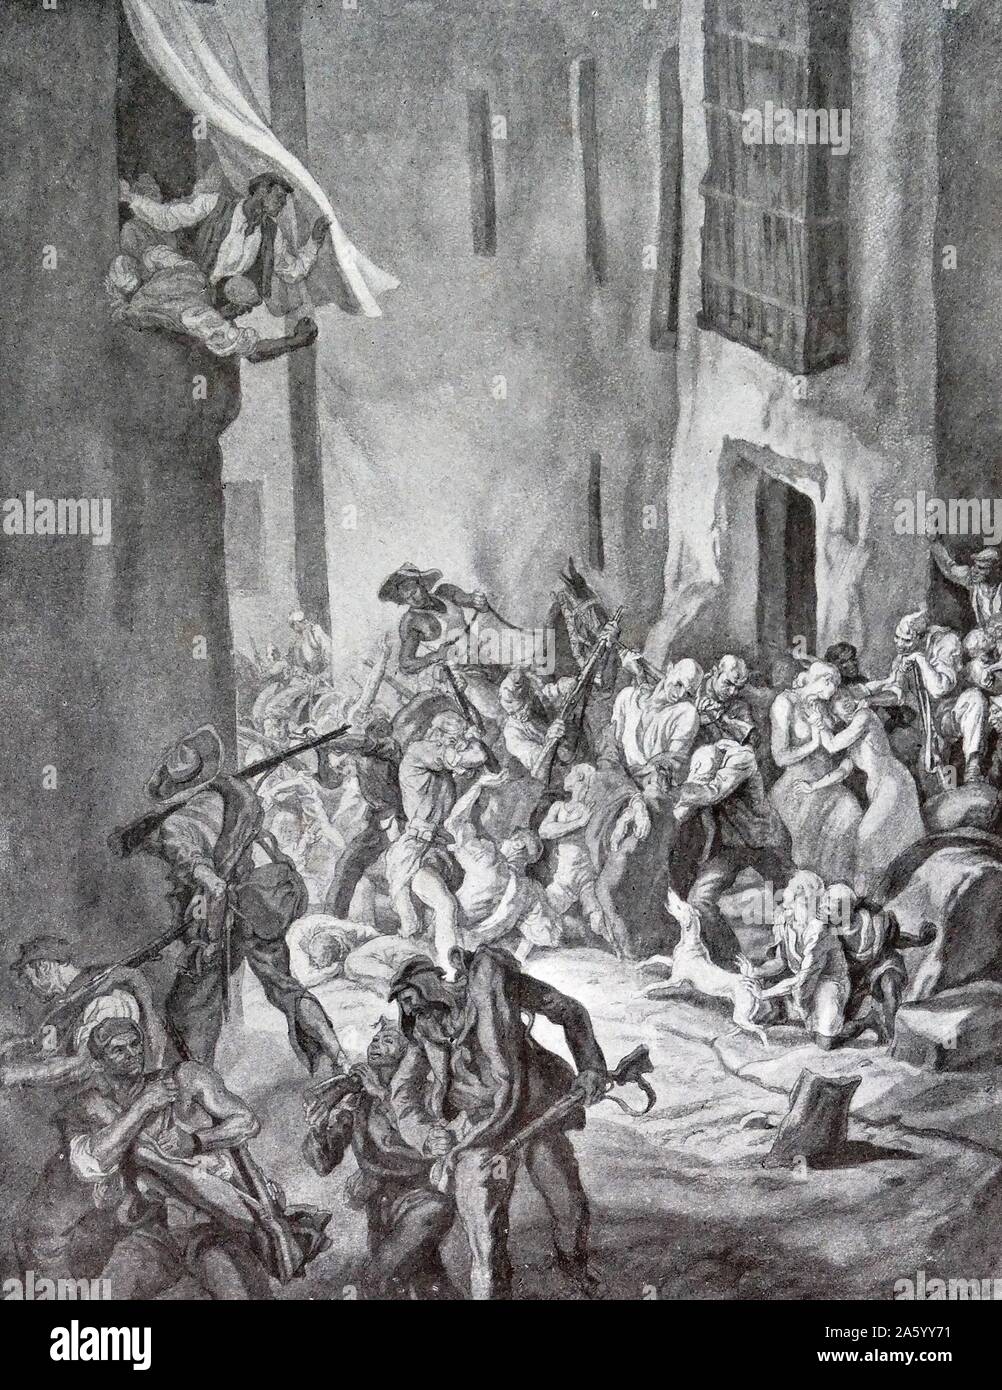 nationalistische zivilen Gefangenen angegriffen von einem republikanischen Mob, in den spanischen Bürgerkrieg. Durch Carlos Saenz de Tejada (1897-1958), spanischer Maler und Illustrator; identifiziert mit der nationalistischen (faschistischen) Seite im spanischen Bürgerkrieg. Stockfoto